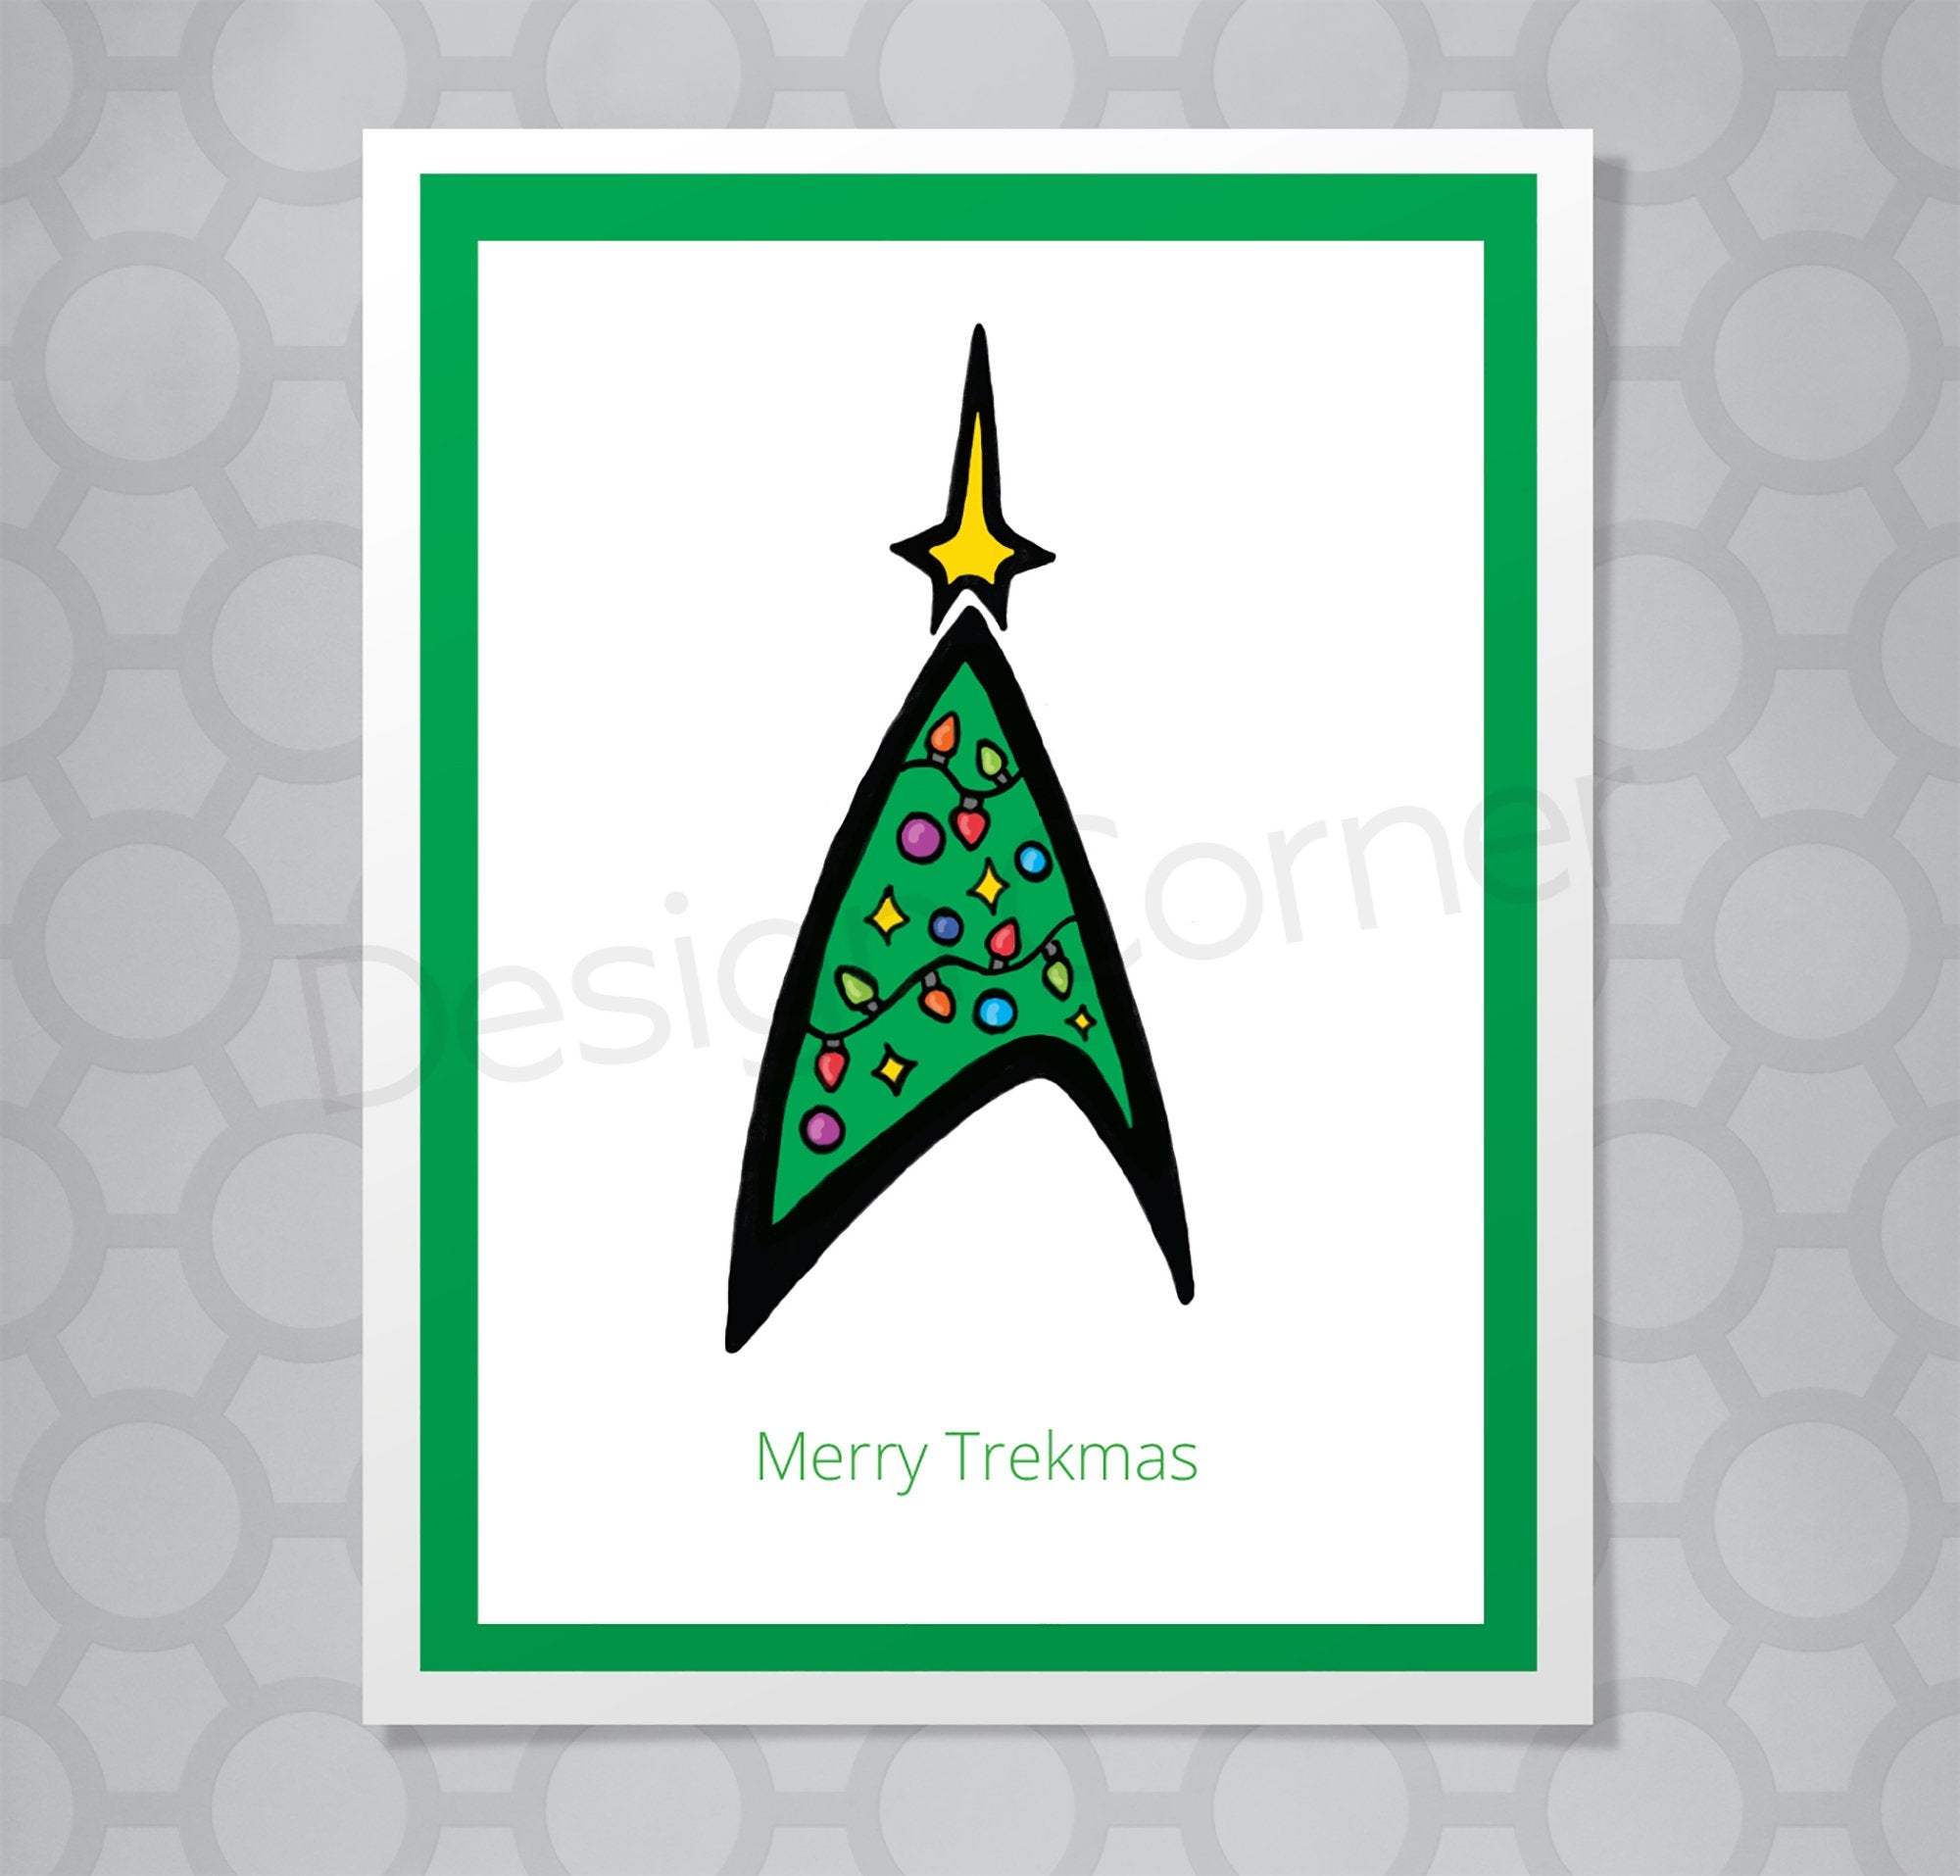 Star Trek Merry Trekmas Christmas Card